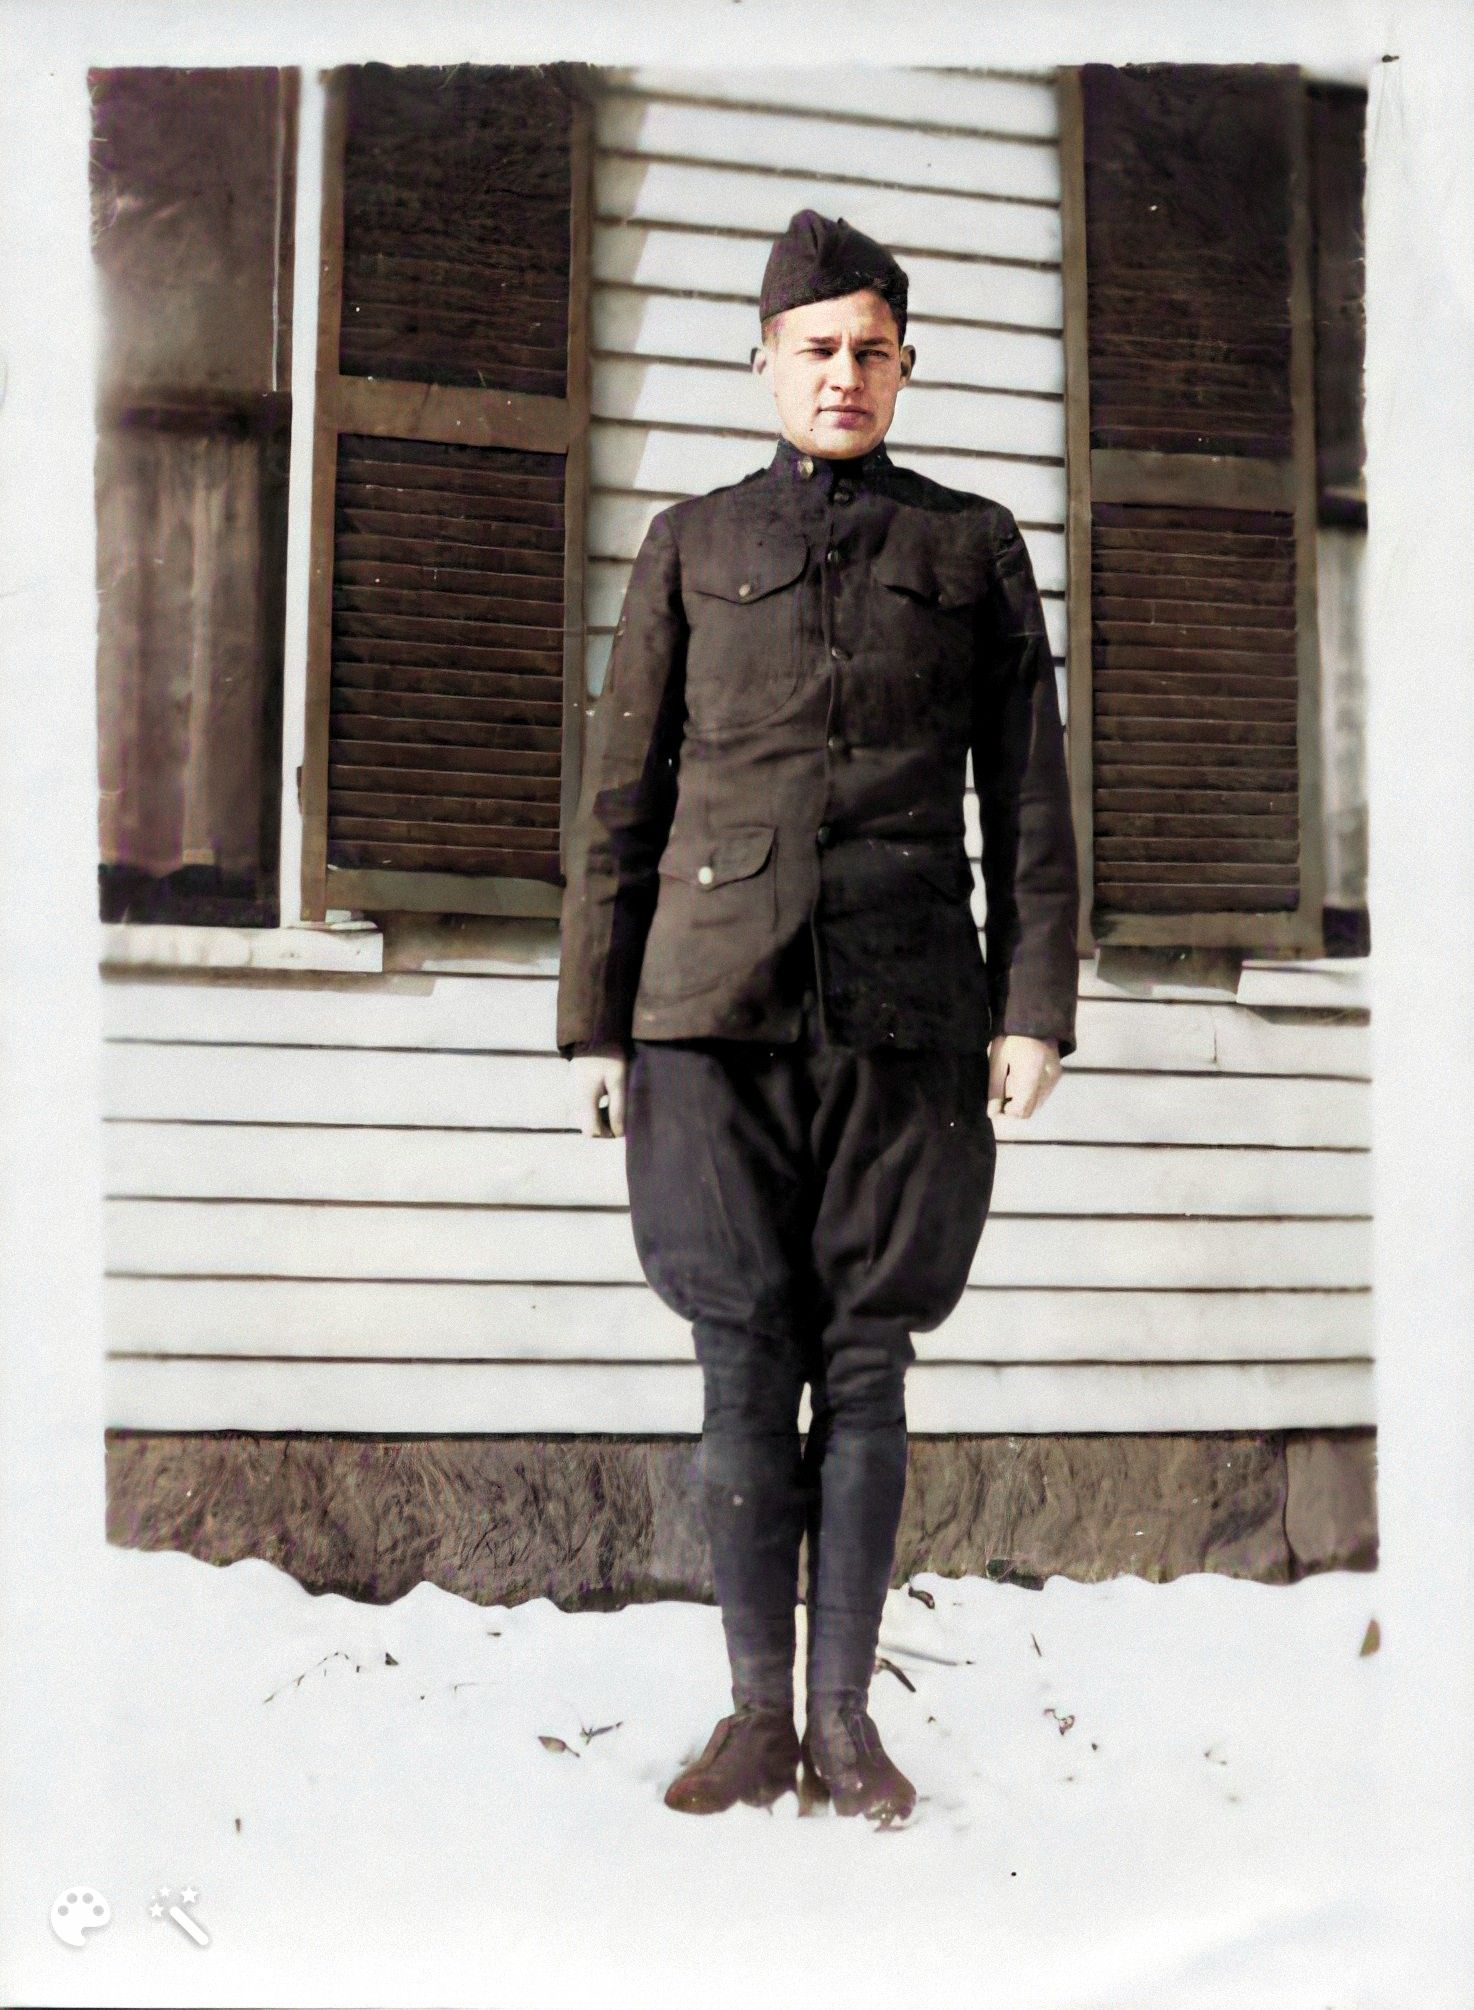 Philip in his uniform